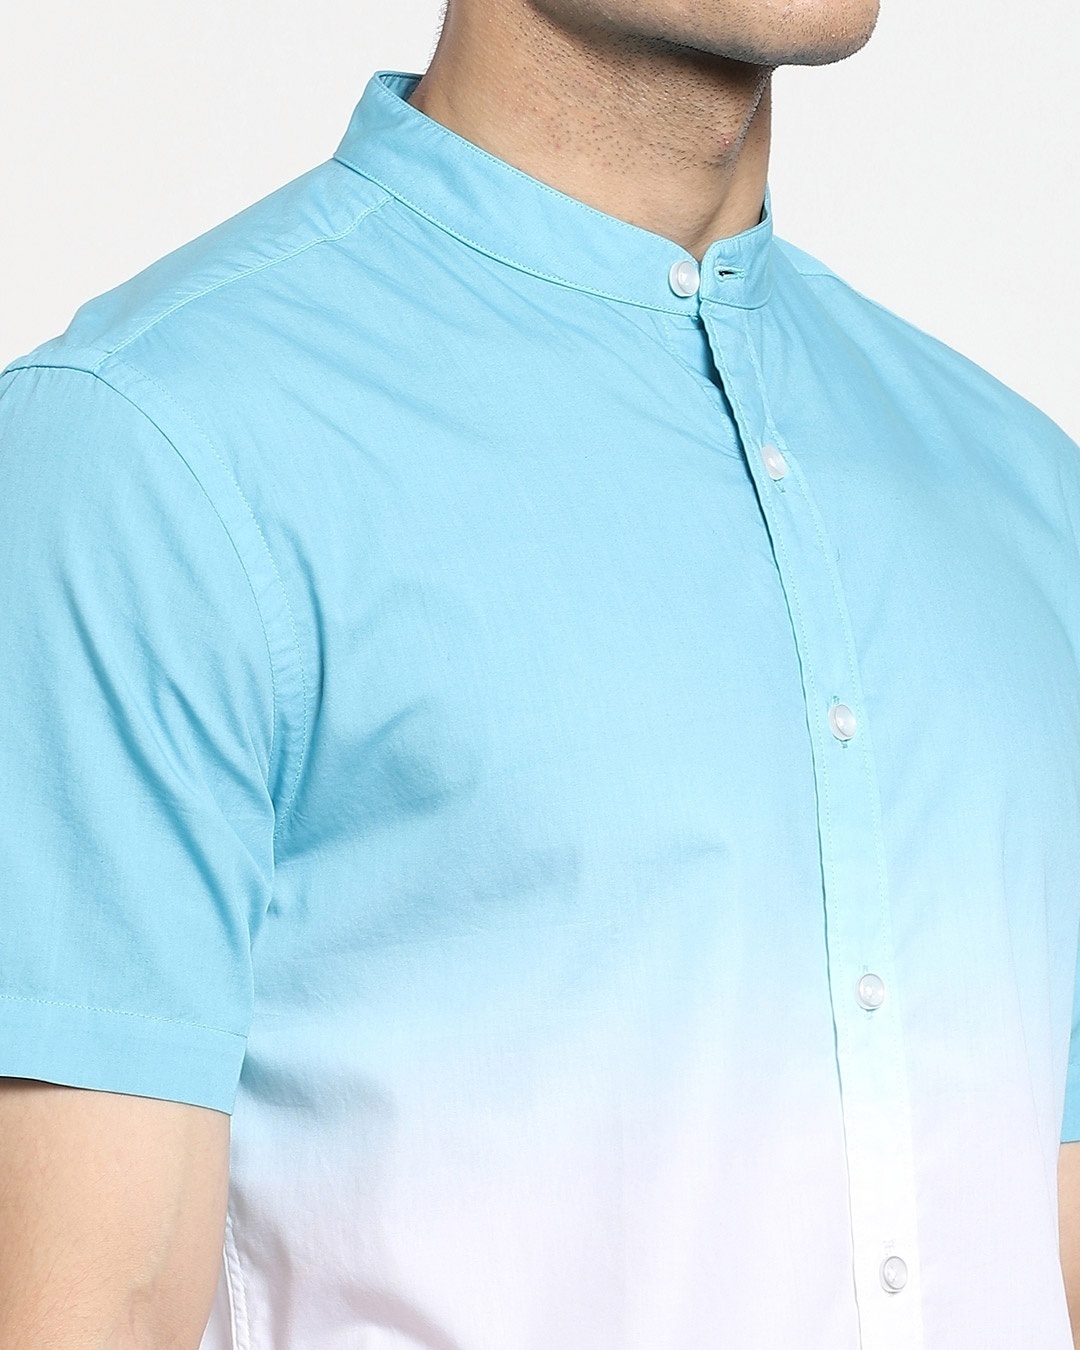 Shop Men's Blue Ombre Shirt